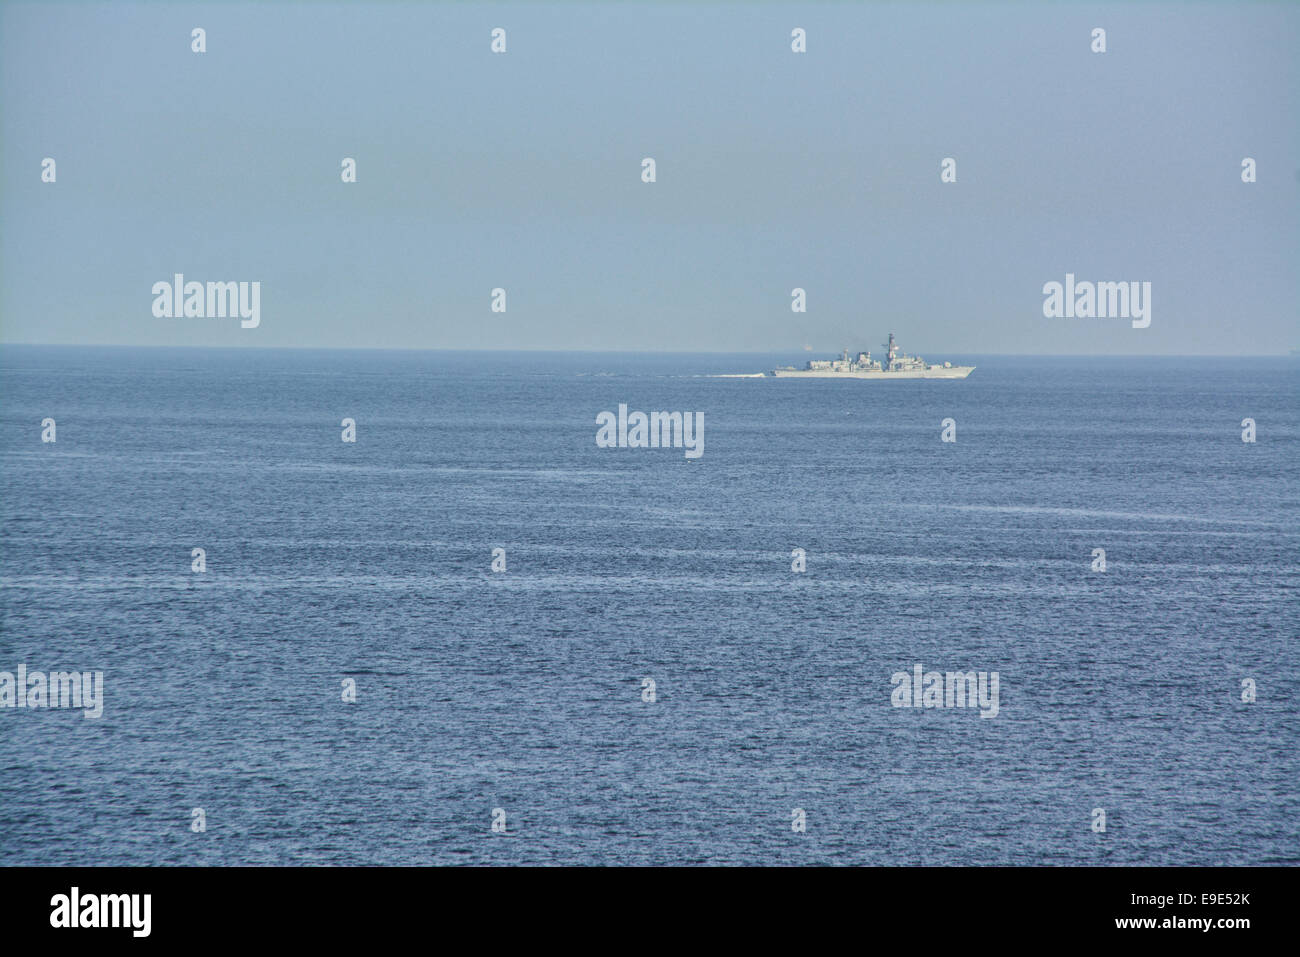 Gibilterra - 26 Ottobre 2014 - Royal Navy fregata HMS Kent (F78) condotta una pattuglia dello Stretto di Gibilterra, dal lato est della Rocca di Gibilterra durante la sera del 25 ottobre 2014. La Royal Navy nave da guerra è stato visto il pattugliamento fra petroliere e altre navi ancorate sul lato est della roccia prima di dirigervi nella baia di Gibilterra. Gibilterra offre off-shore servizi di bunkeraggio sono tra i suoi servizi marittimi. Il Britannico territorio di oltremare è situato nello Stretto di Gibilterra. Credito: Stephen Ignacio/Alamy Live News Foto Stock